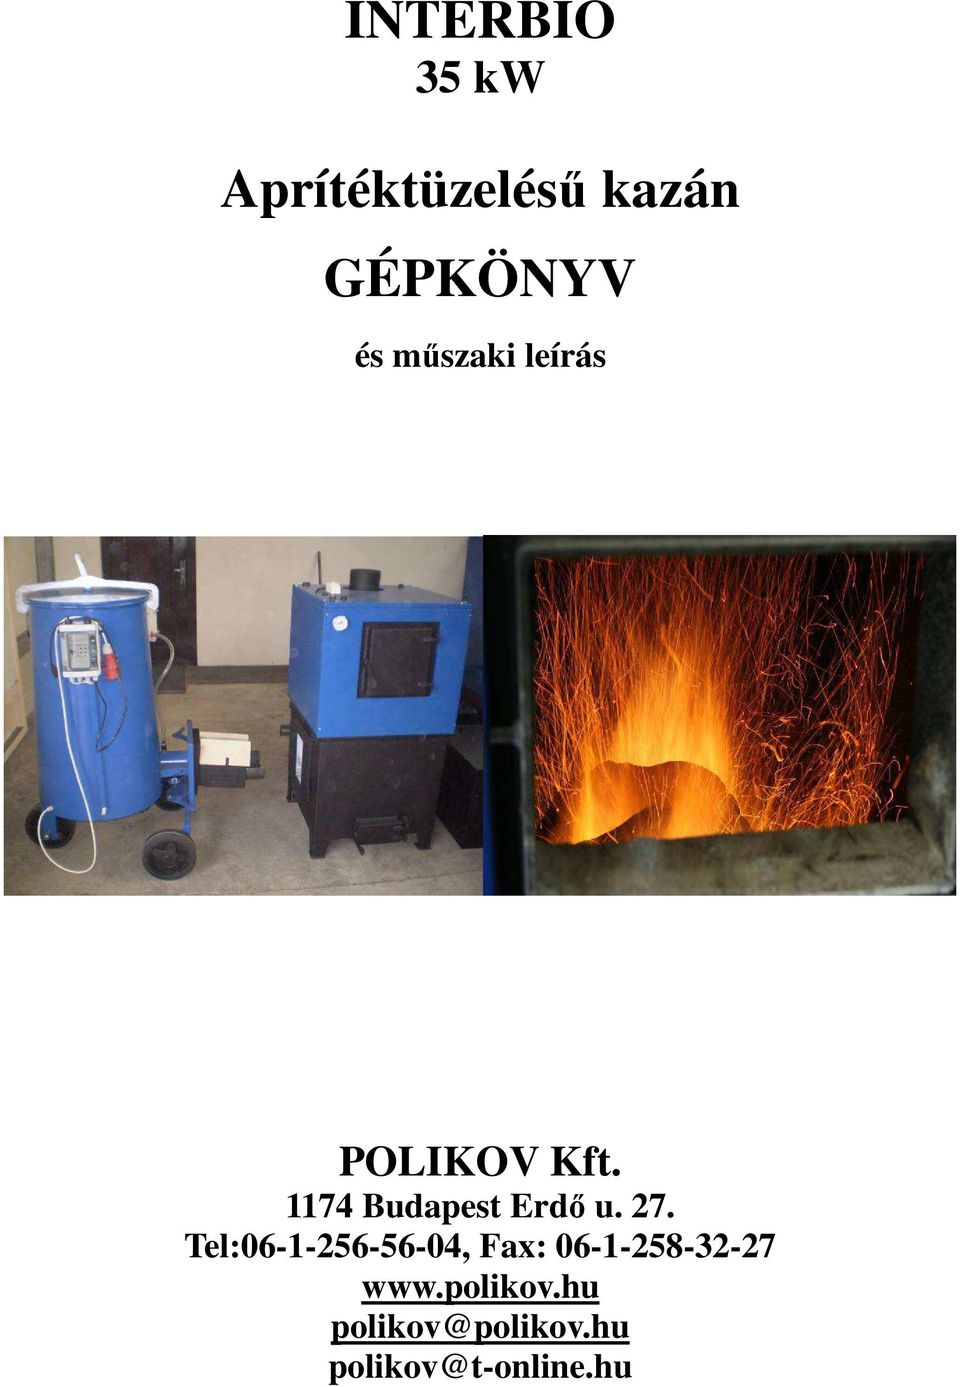 INTERBIO 35 kw. Aprítéktüzelésű kazán GÉPKÖNYV - PDF Free Download